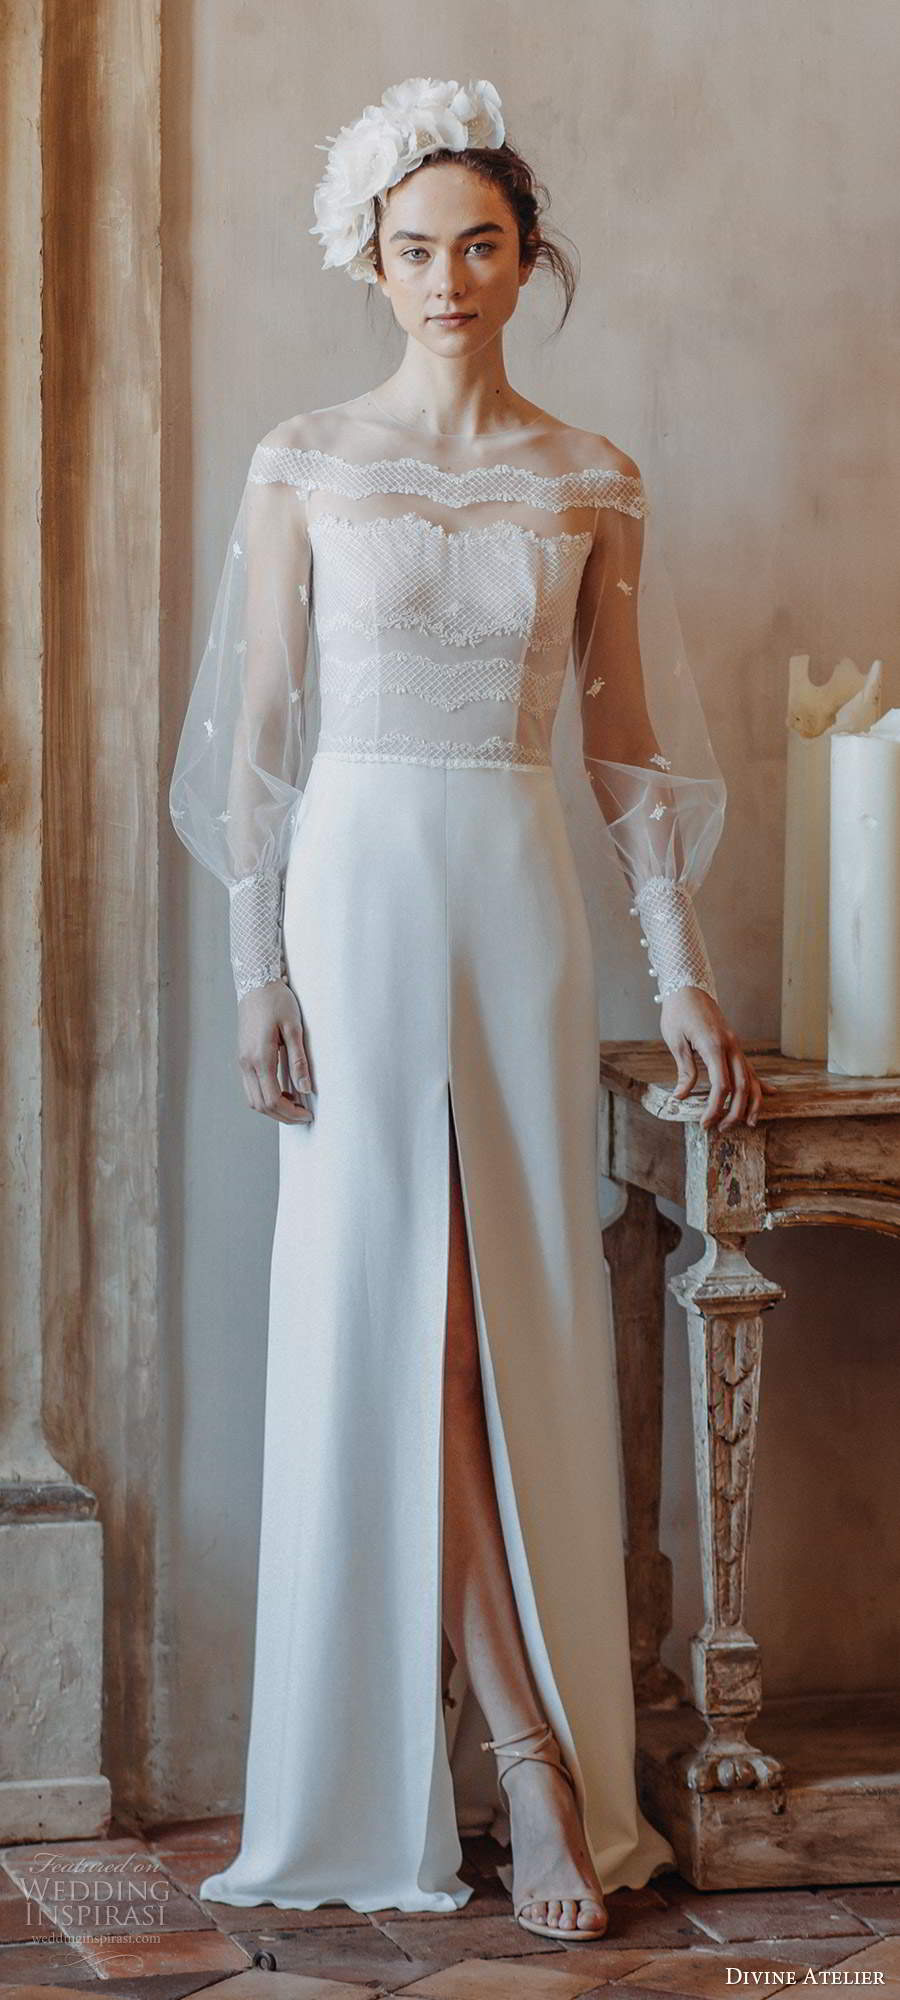 divine atelier 2020 bridal illusion bishop long sleeves jewel neckline sheer bodice a line wedding dress slit skirt sheer back sweep train (6) mv